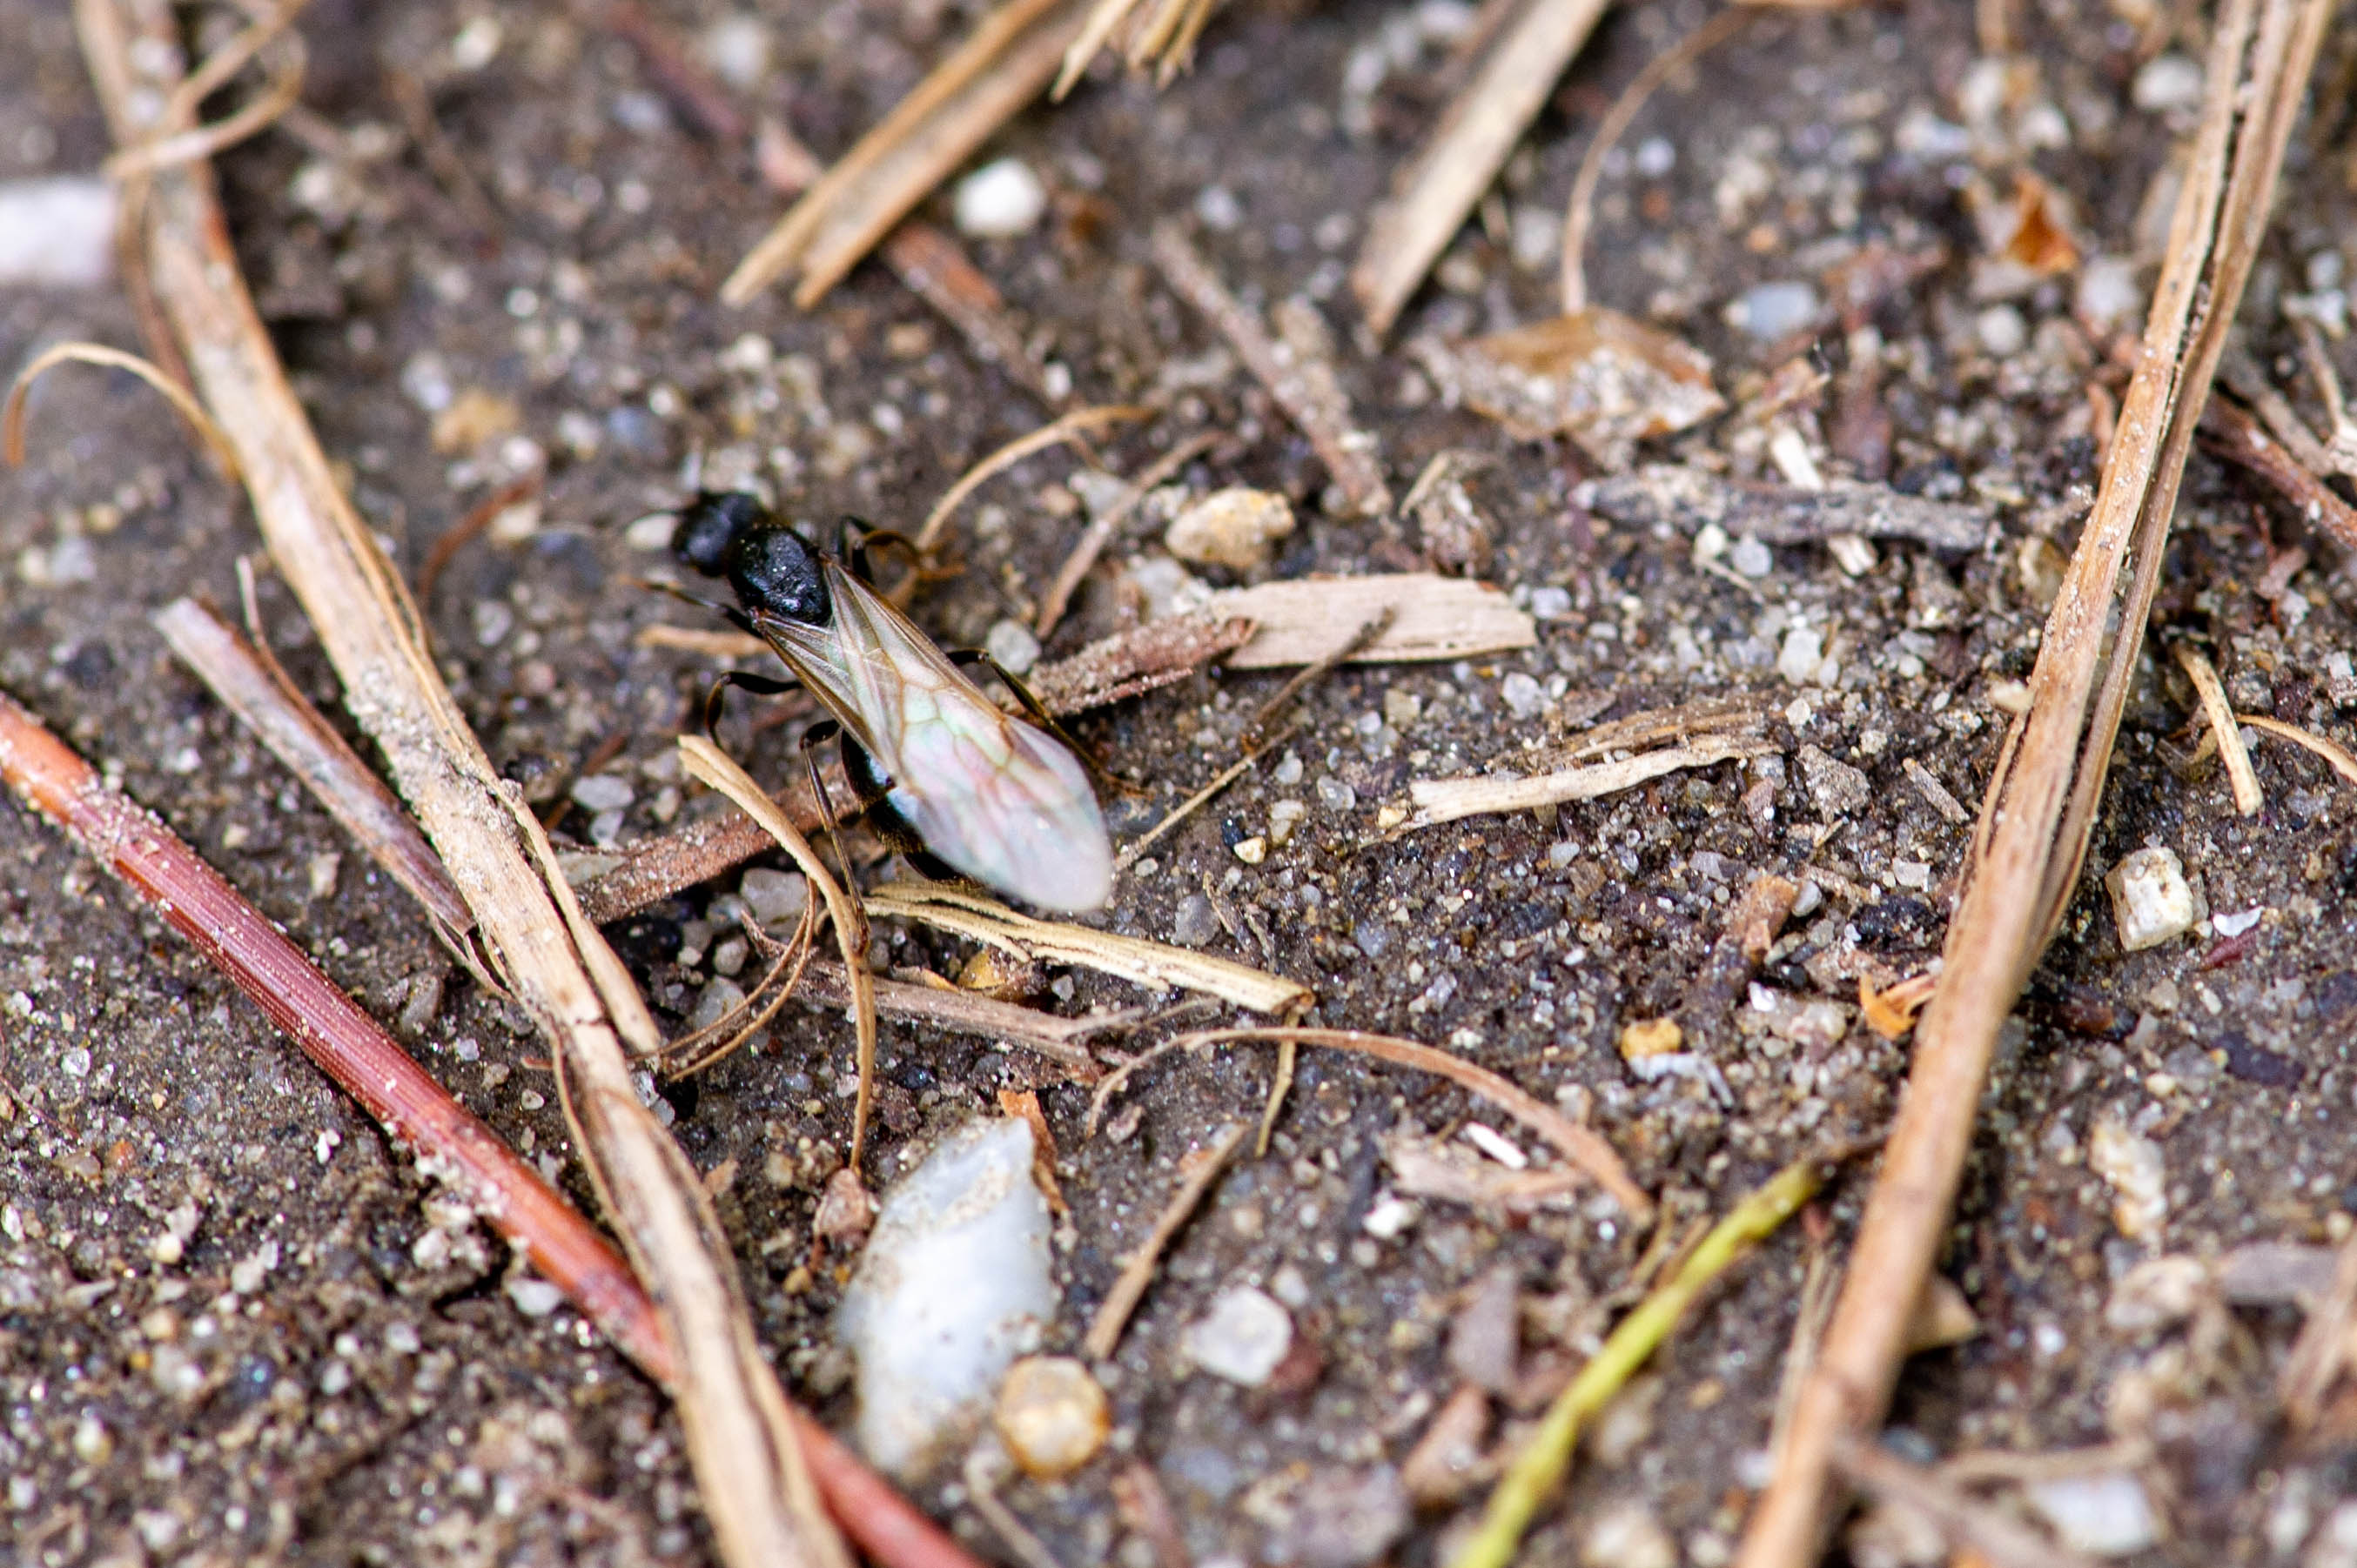 クロナガアリ 虫の写真と生態なら昆虫写真図鑑 ムシミル